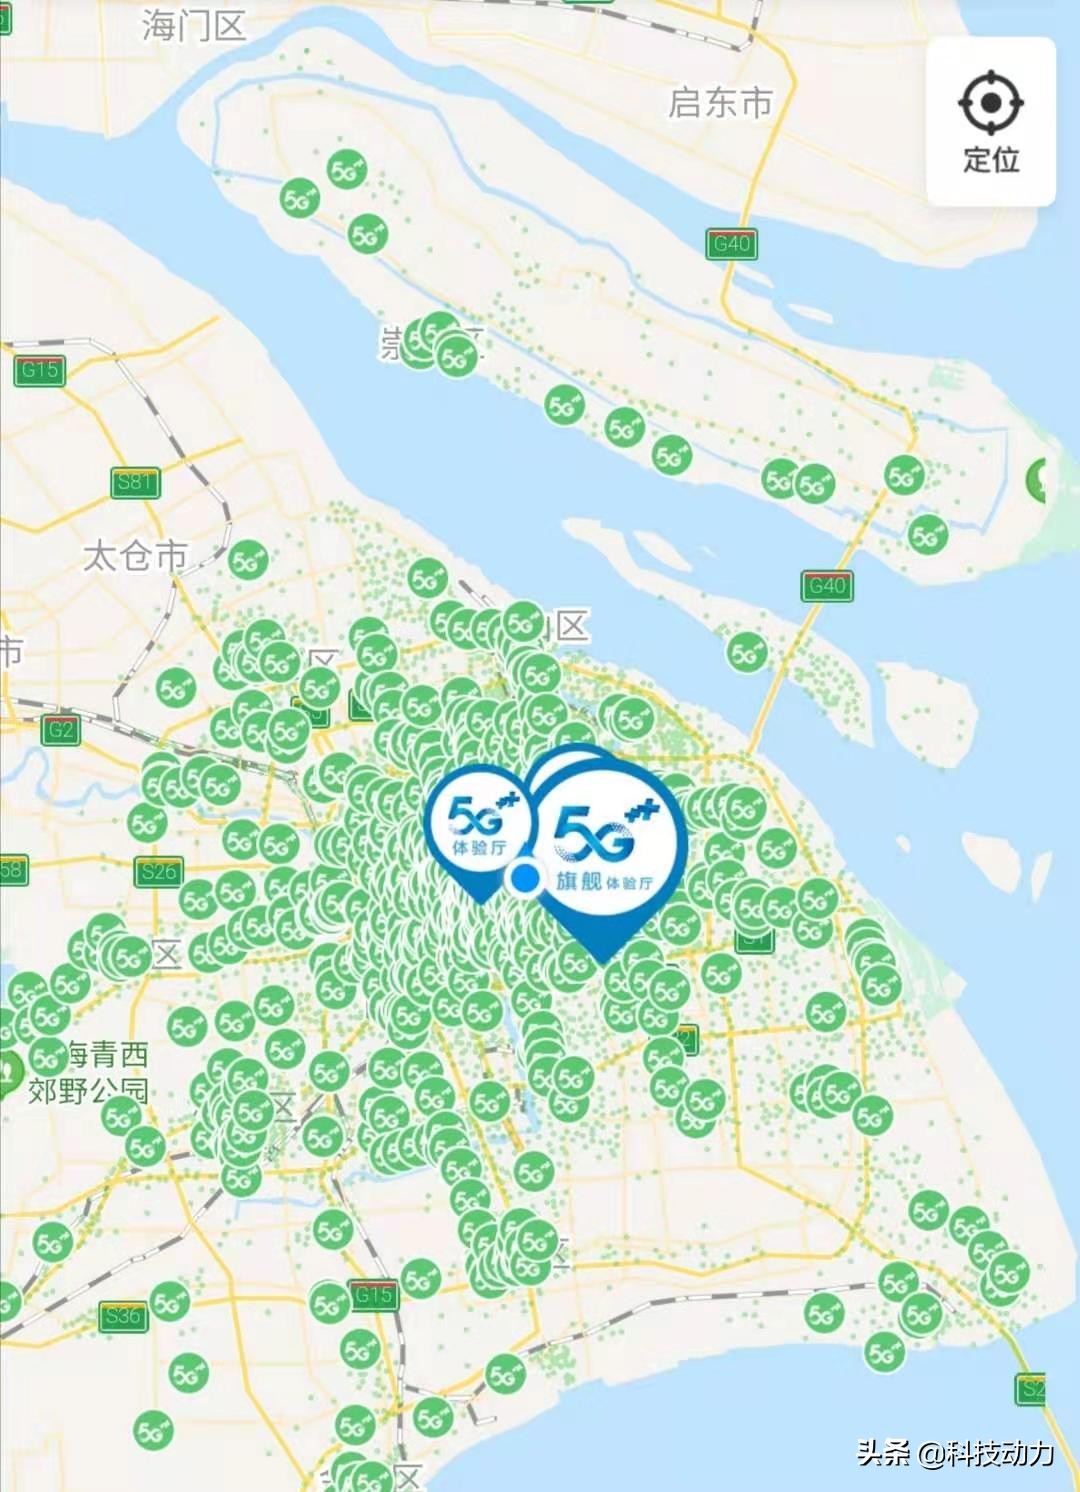 5G 网络逐渐覆盖城市，普通市民分享真实体验与感悟  第9张